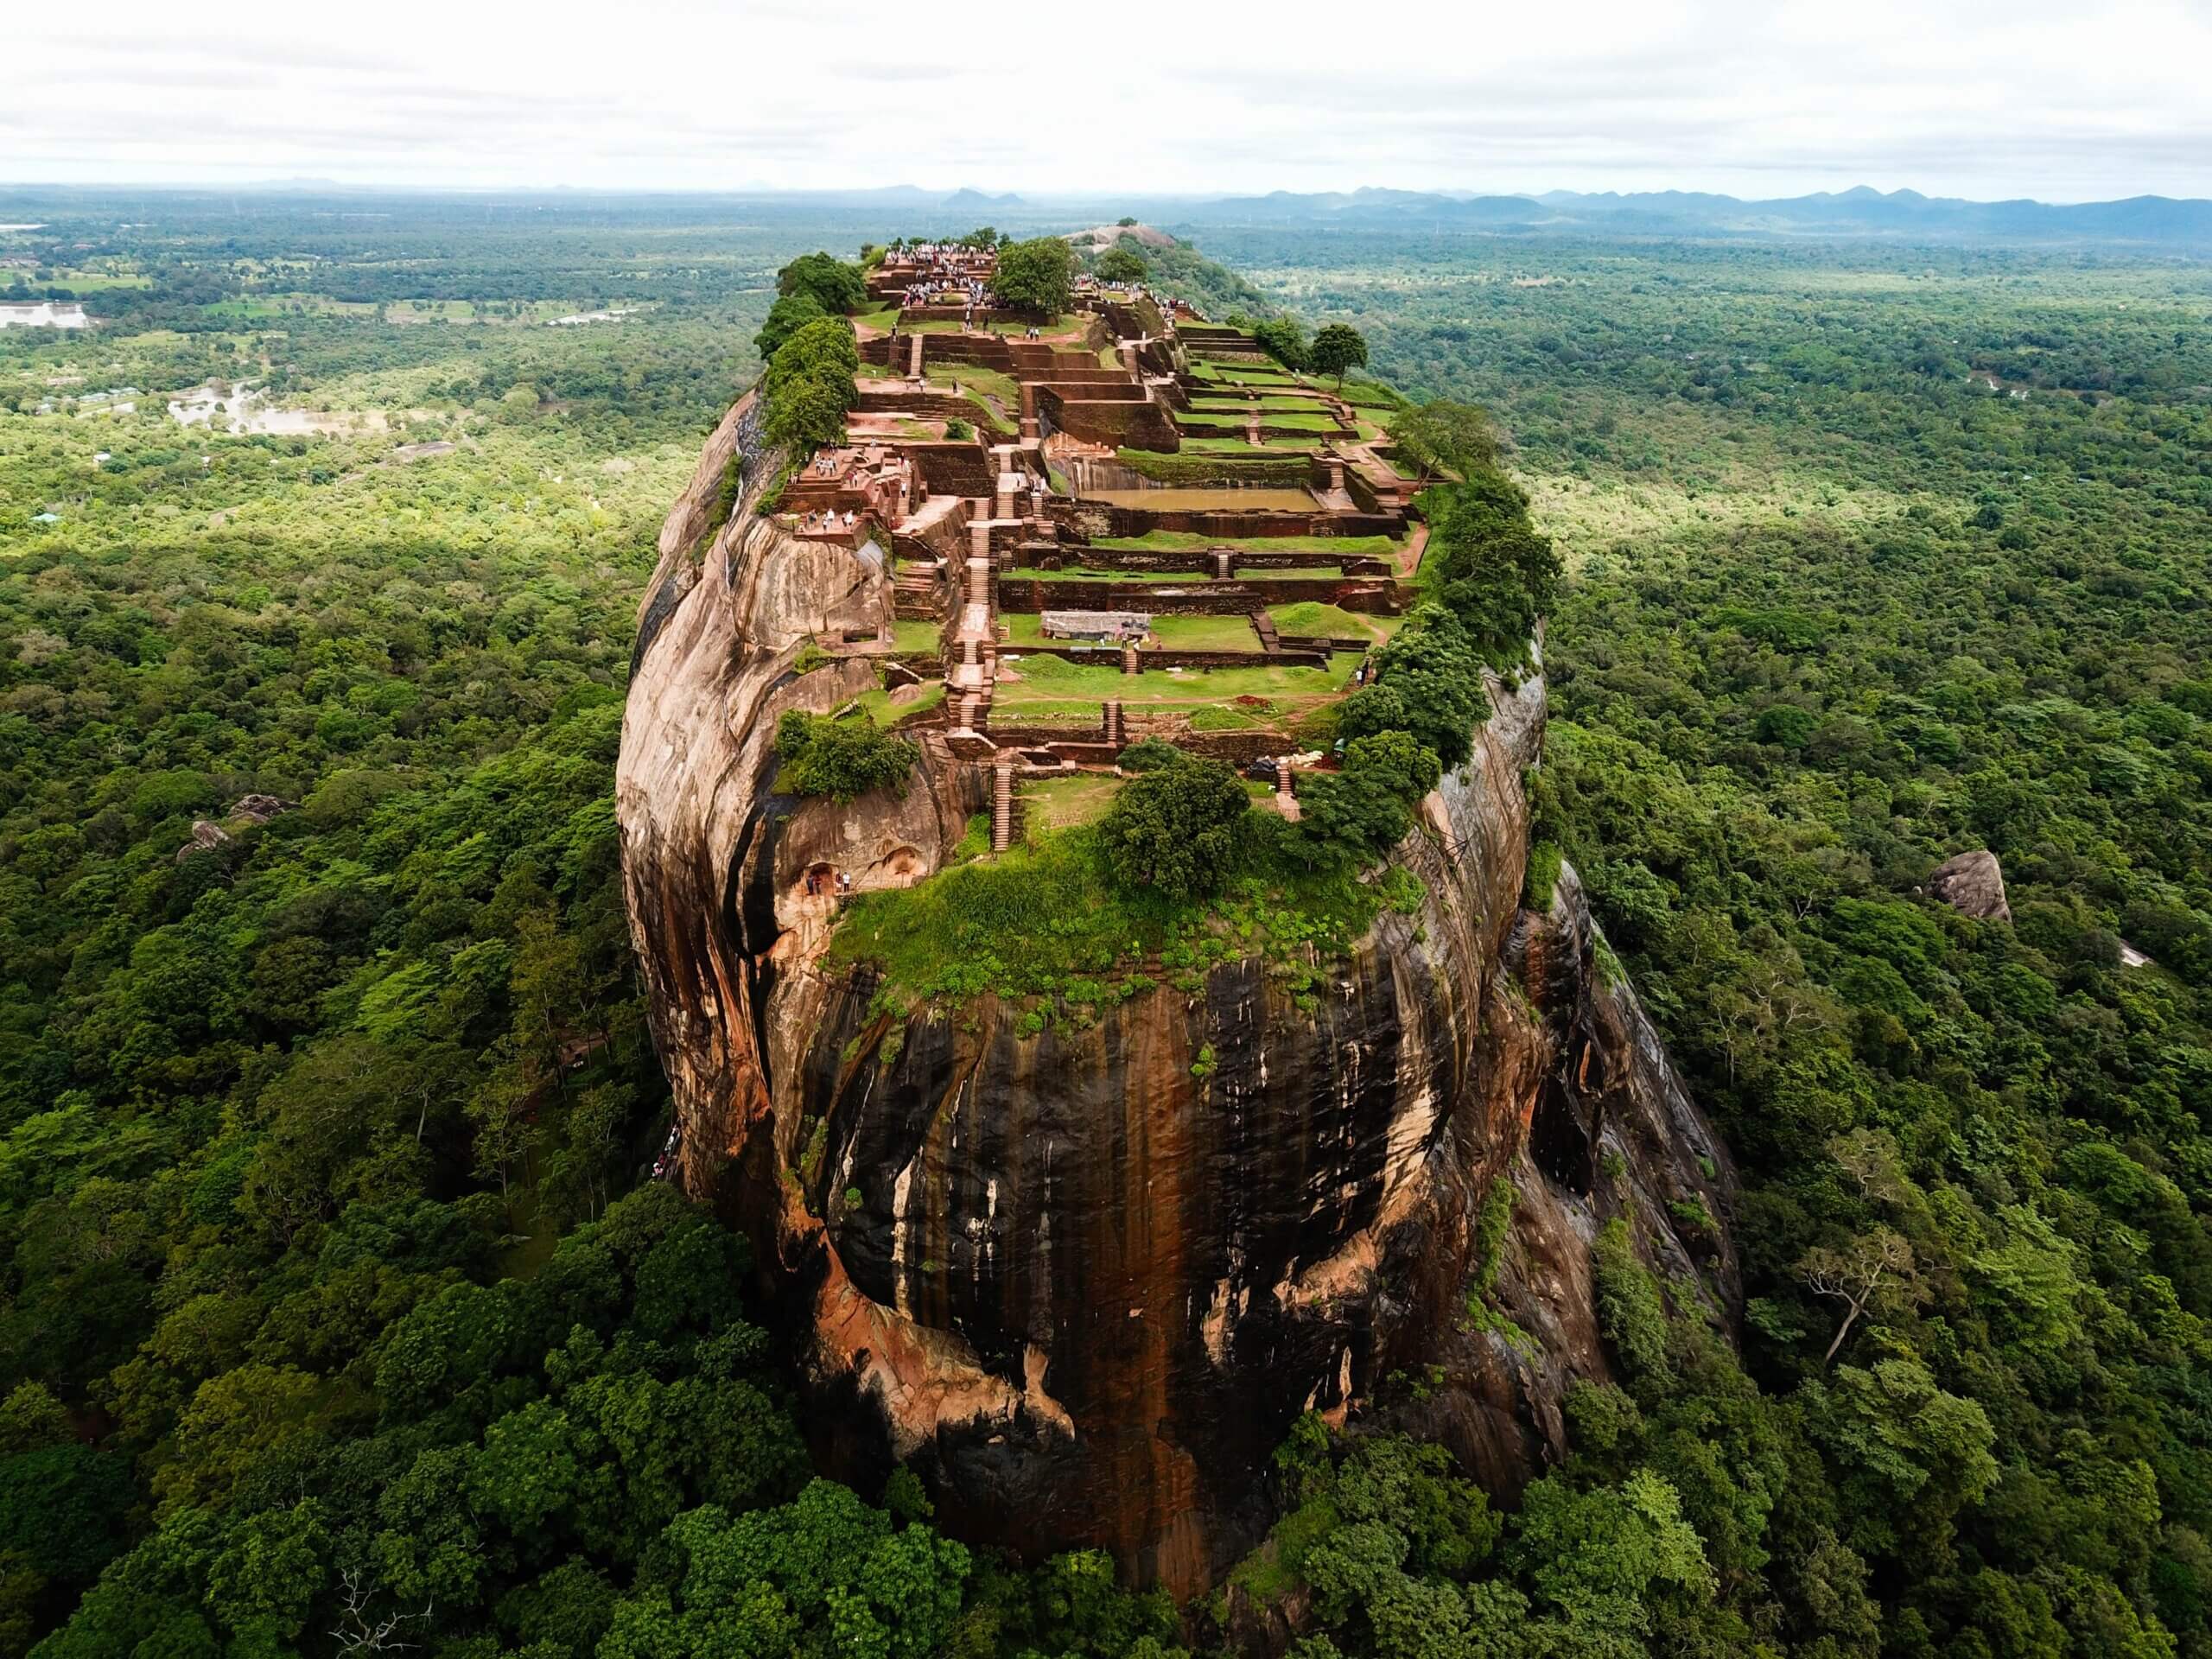 Sigiriya Rock Fortress in Sri Lanka by Dylan Shaw via Unsplash.